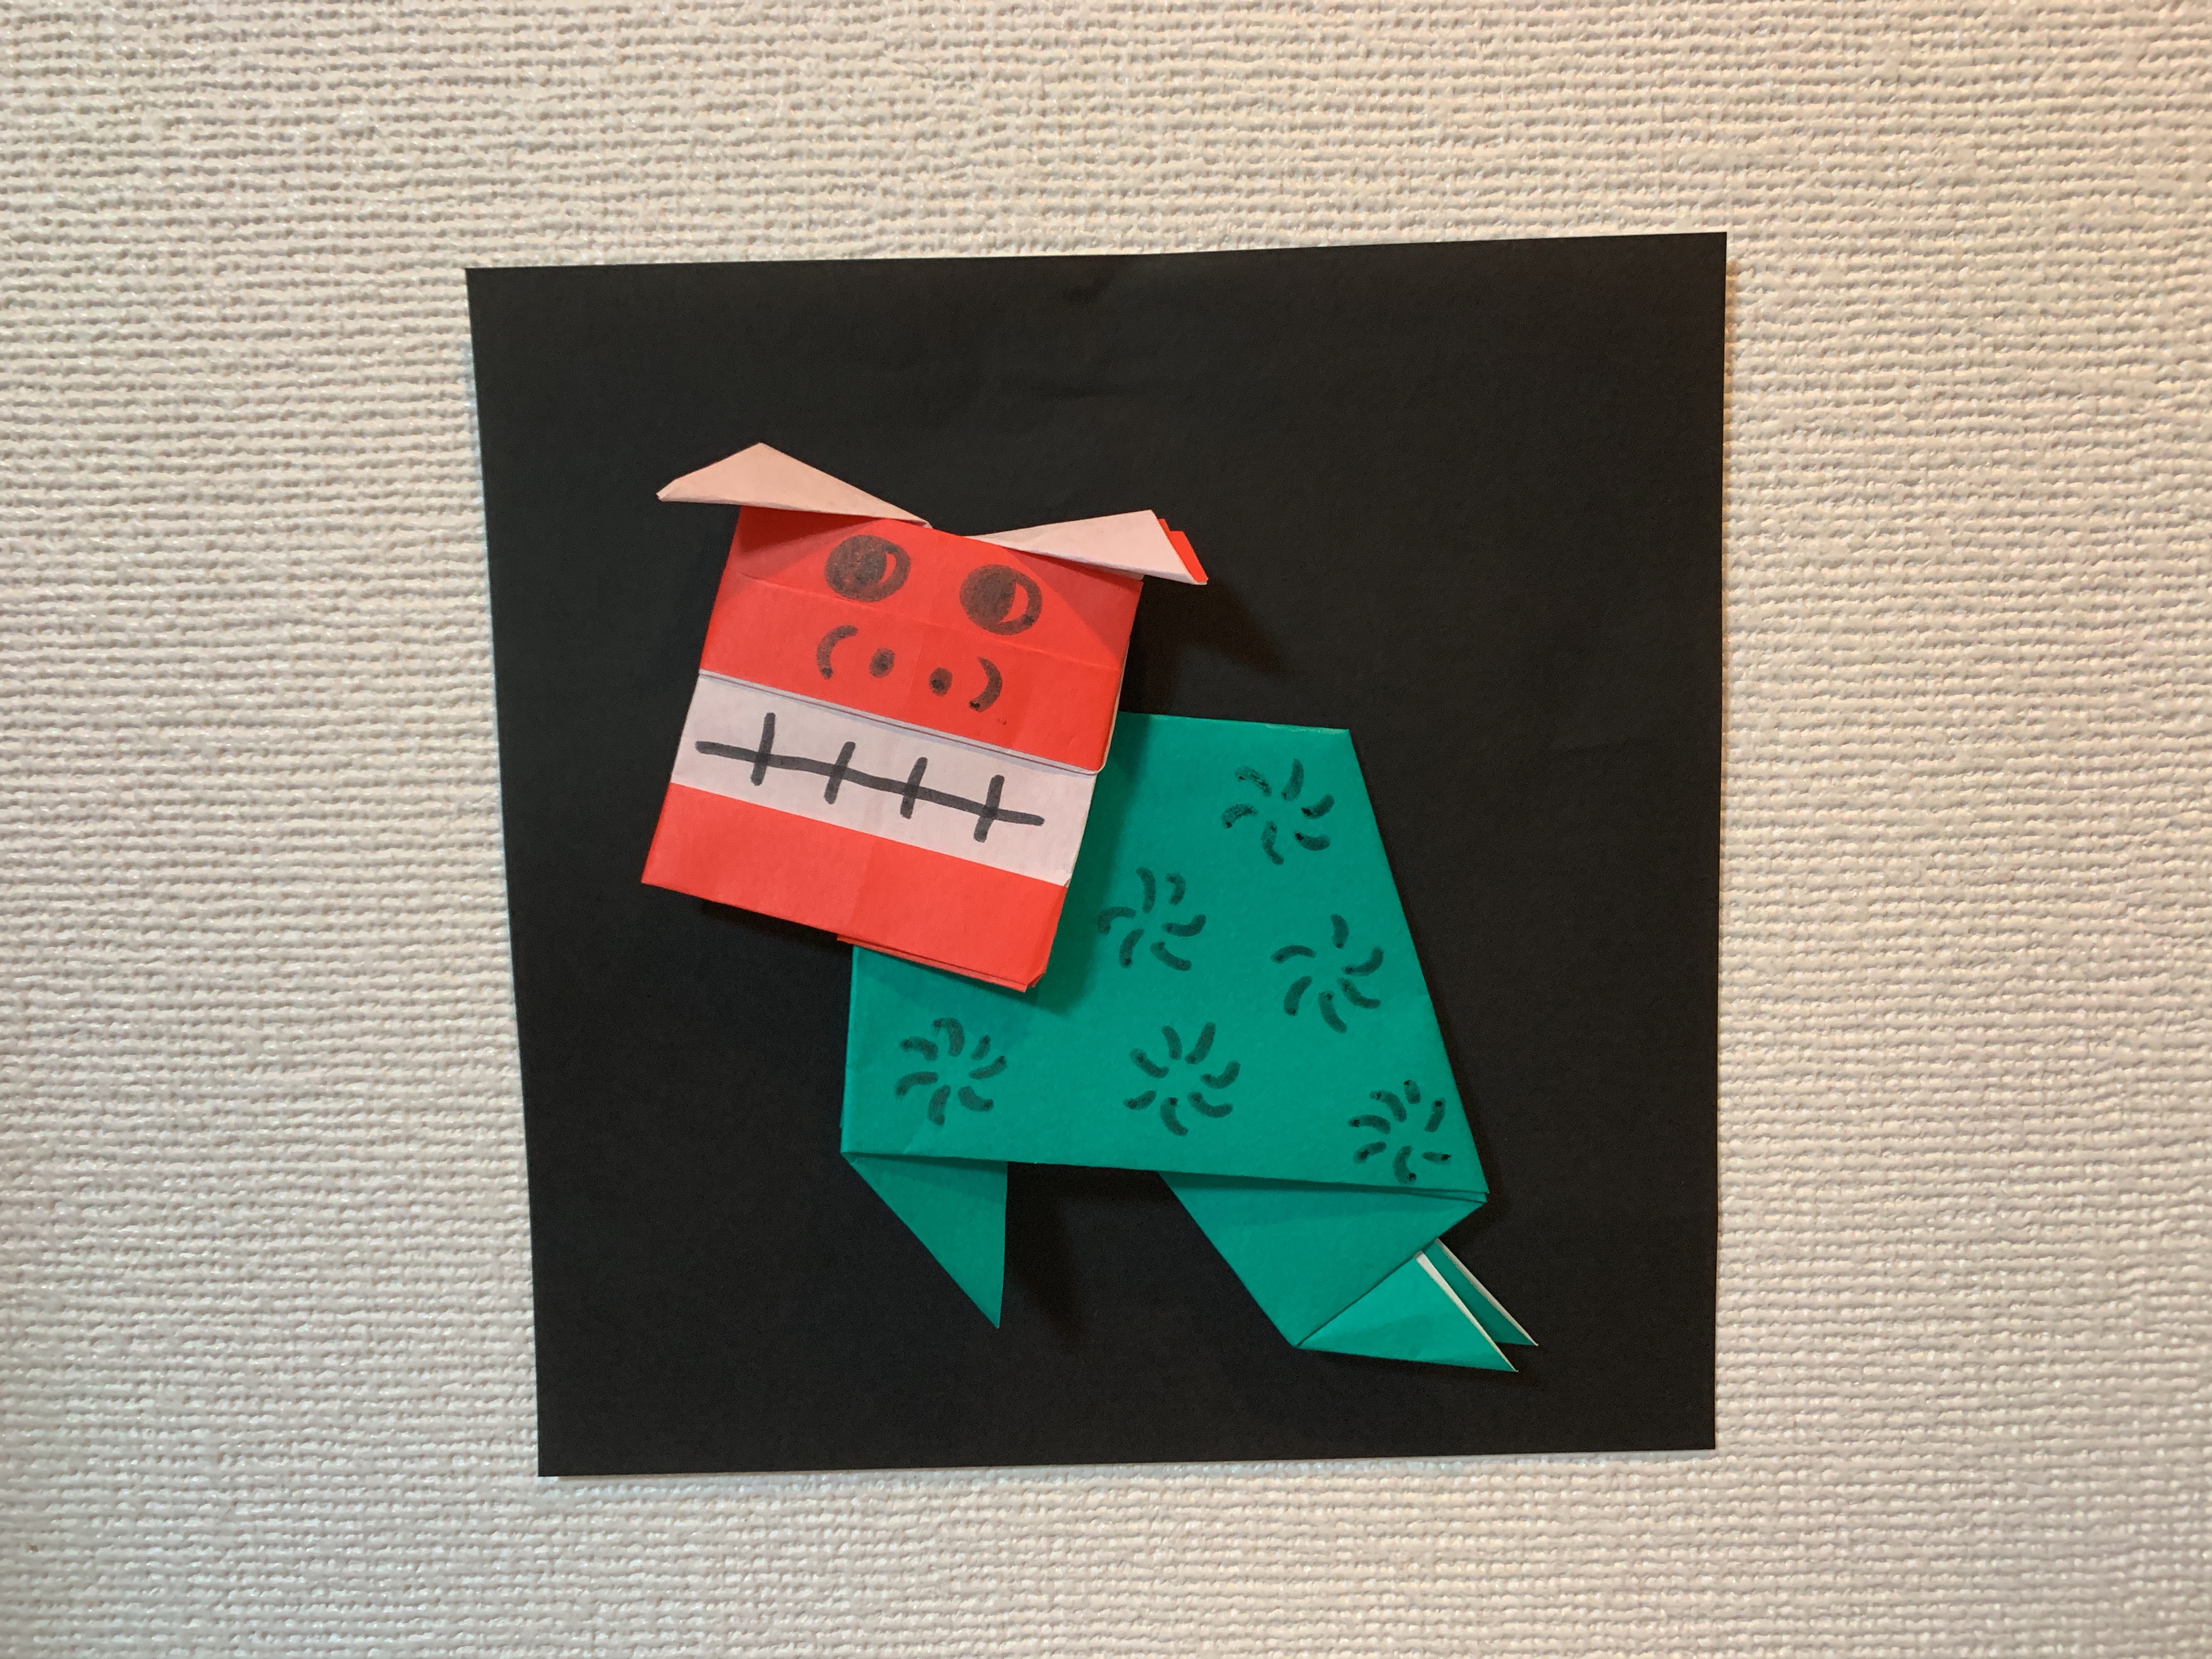 折り紙でお正月飾りを作ろう 3歳でもできる簡単なデザイン5選 子育てアルファ